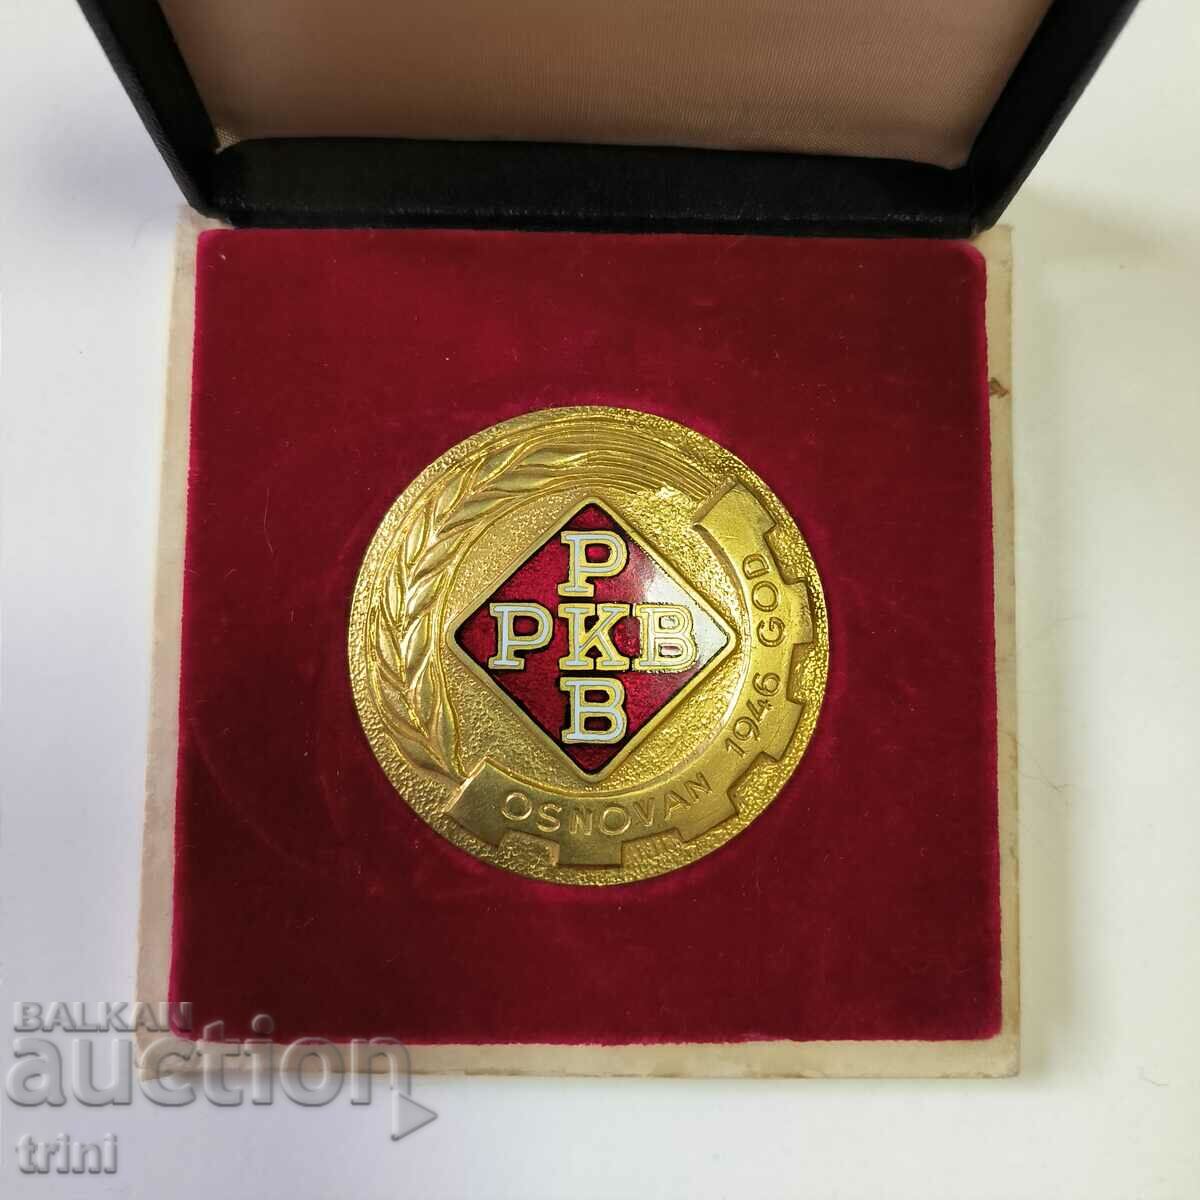 Μετάλλιο Γιουγκοσλαβίας για 20 χρόνια υπηρεσίας στο RKB με αριθμό